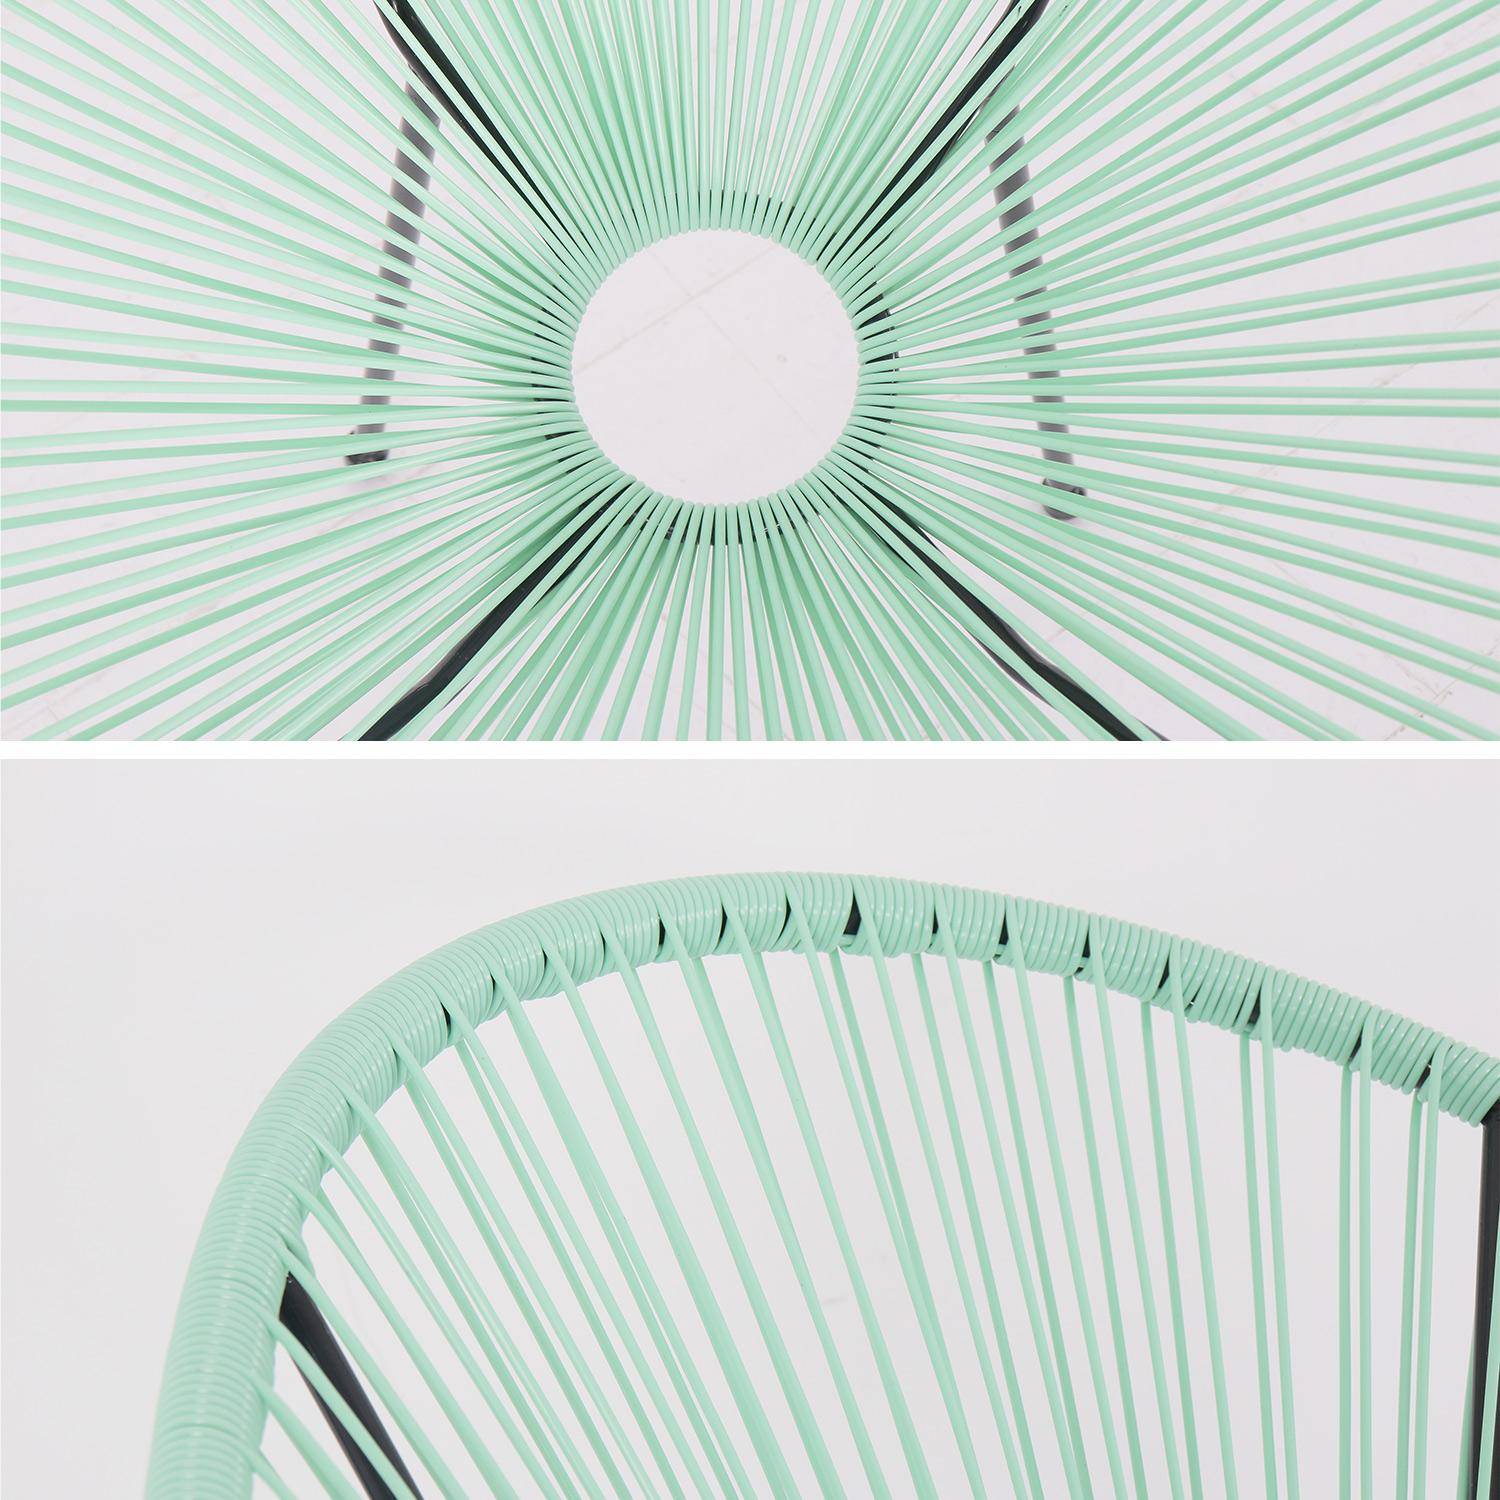 ACAPULCO stoel ei-vormig Watergroen- Stoel 4 poten retro design, plastic koorden, binnen/buiten Photo4